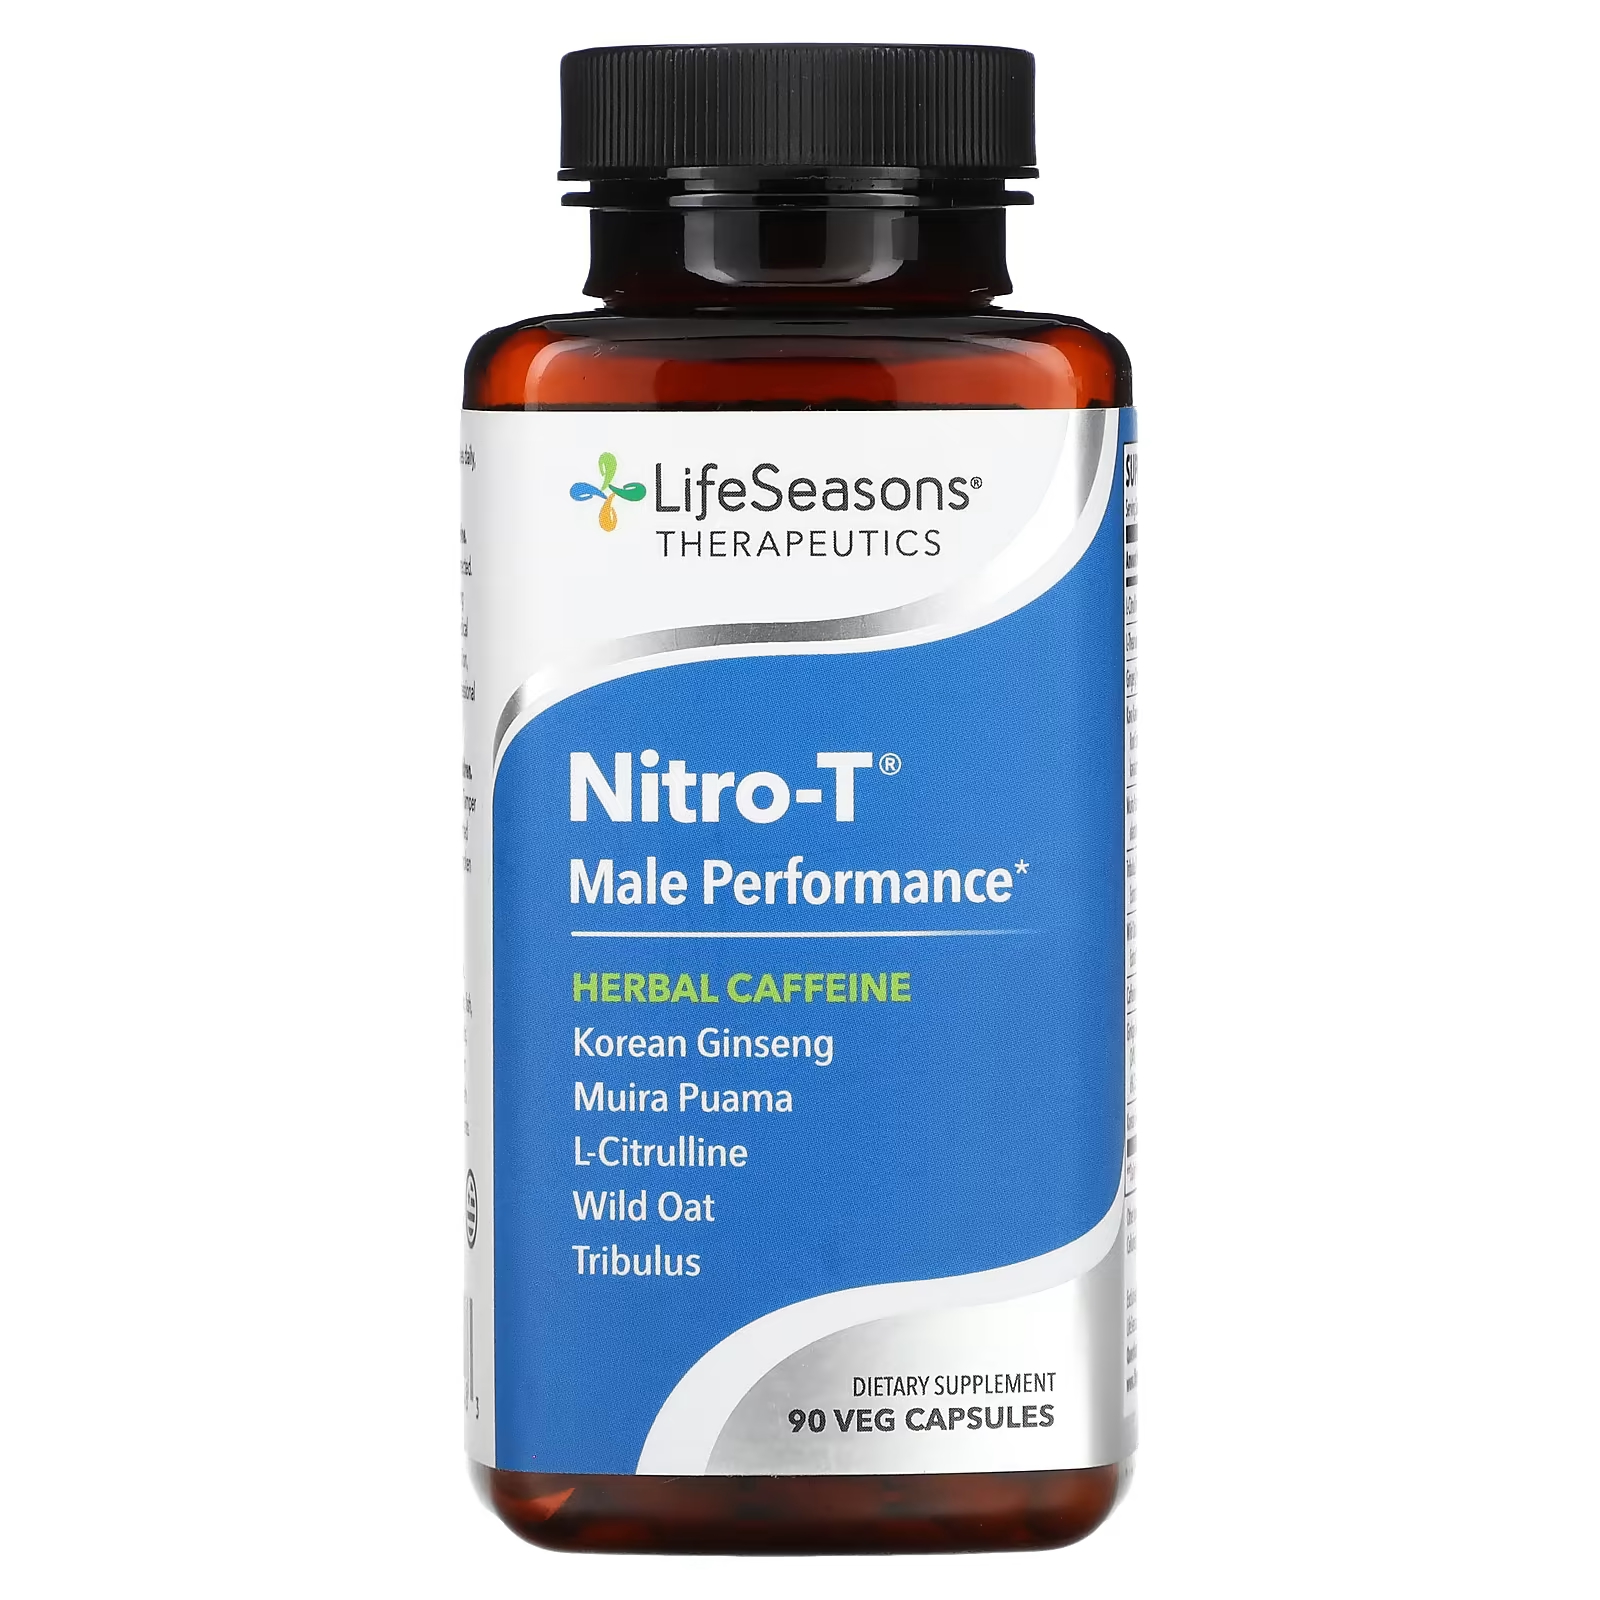 Пищевая добавка LifeSeasons Nitro-T для мужчин, 90 капсул lifeseasons mood stabili t добавка для поддержки хорошего настроения 60 вегетарианских капсул